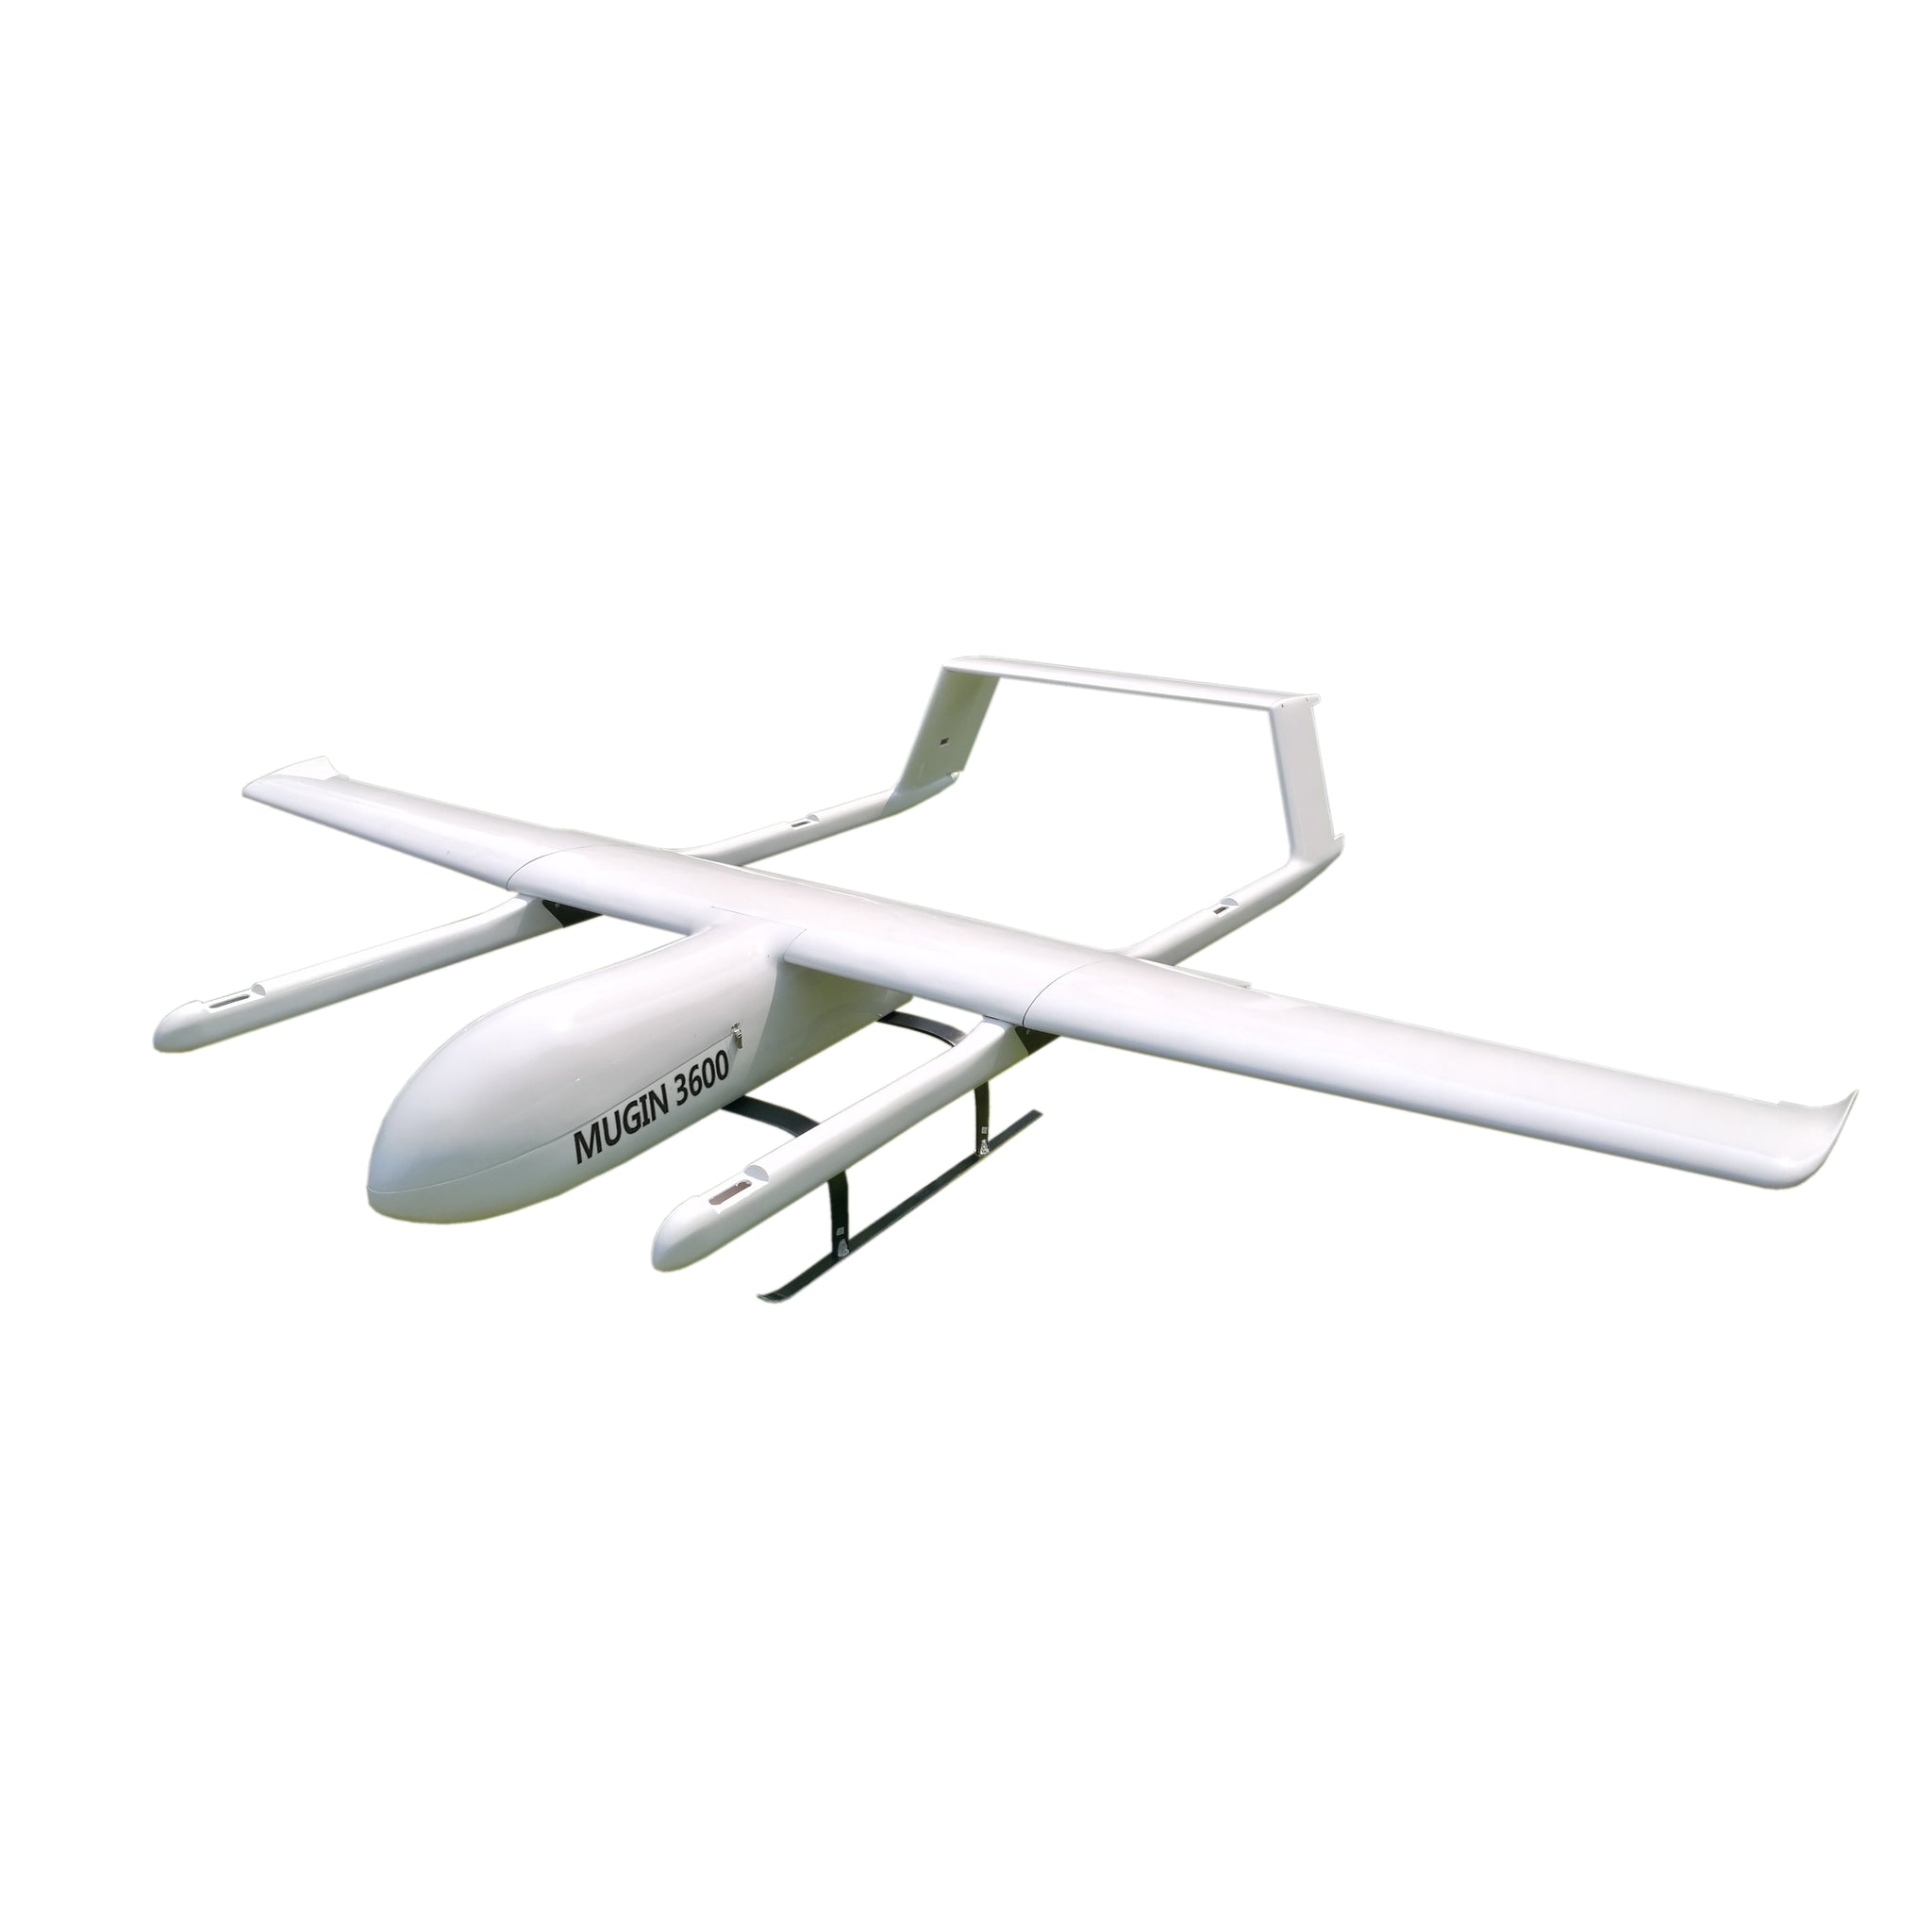 Mugin-3 VTOL Carbon UAV 3600mm Kit